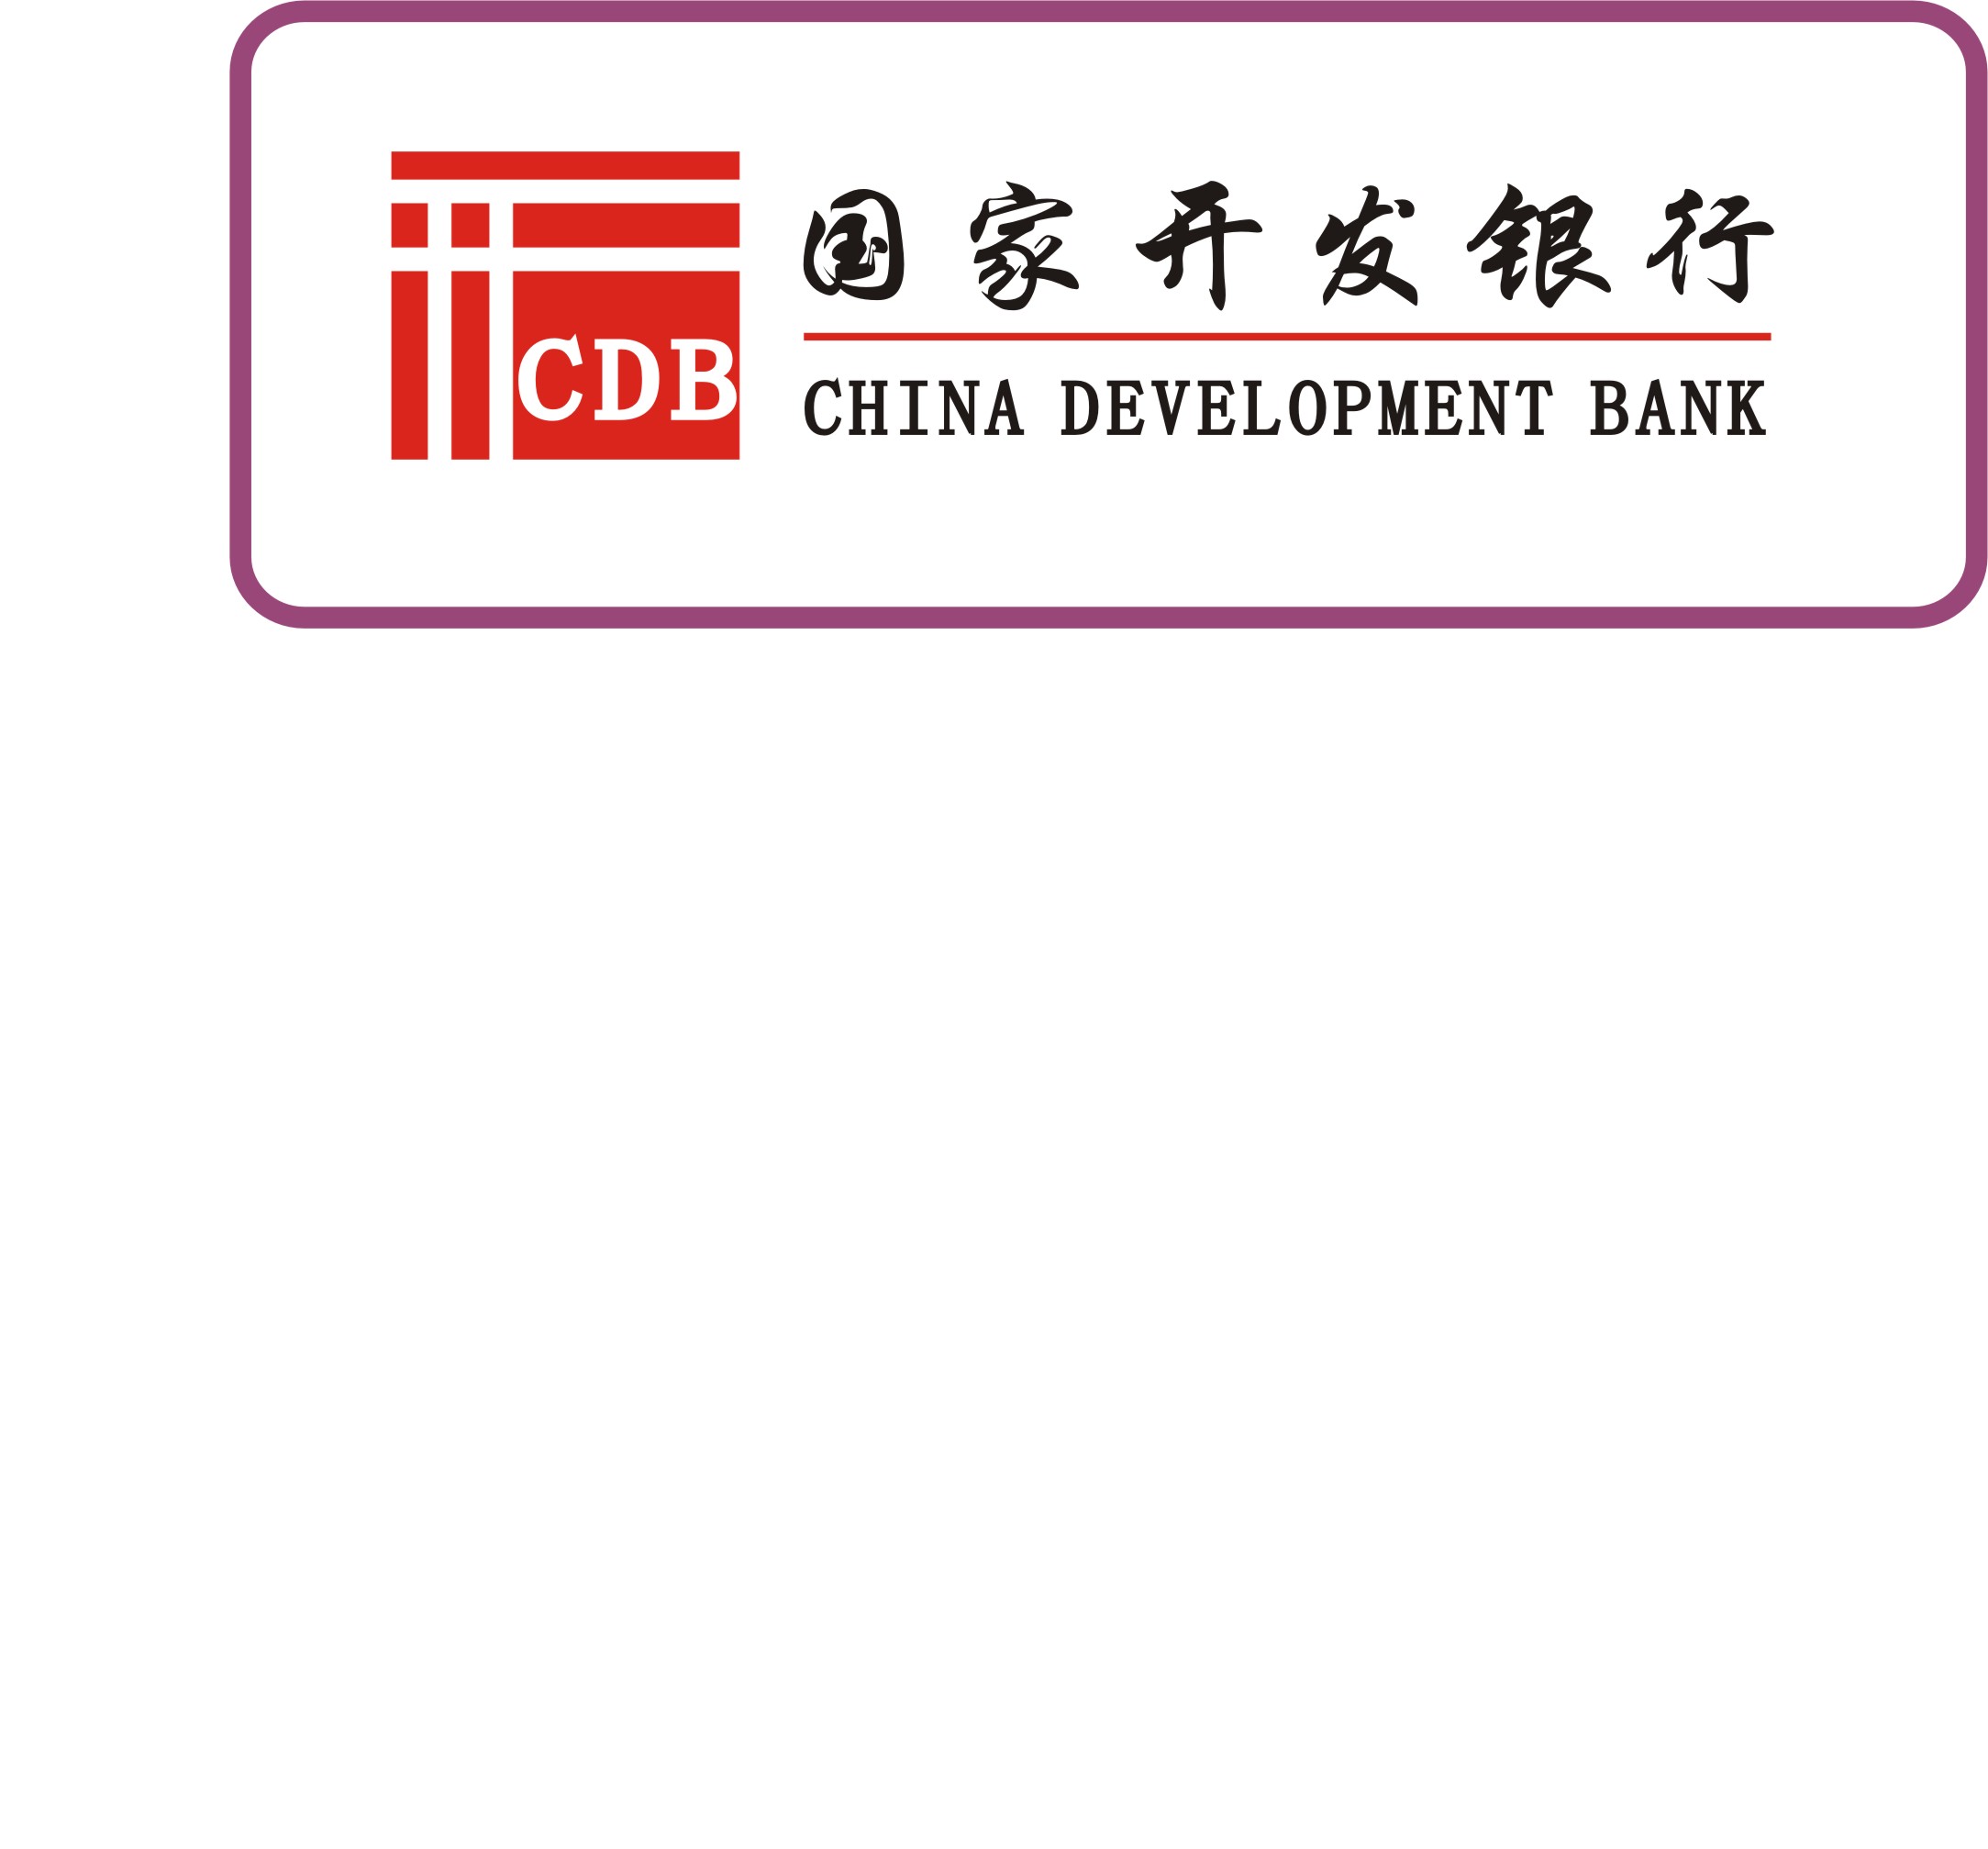 国家开发银行行徽(第二轮)_10000元_K68威客